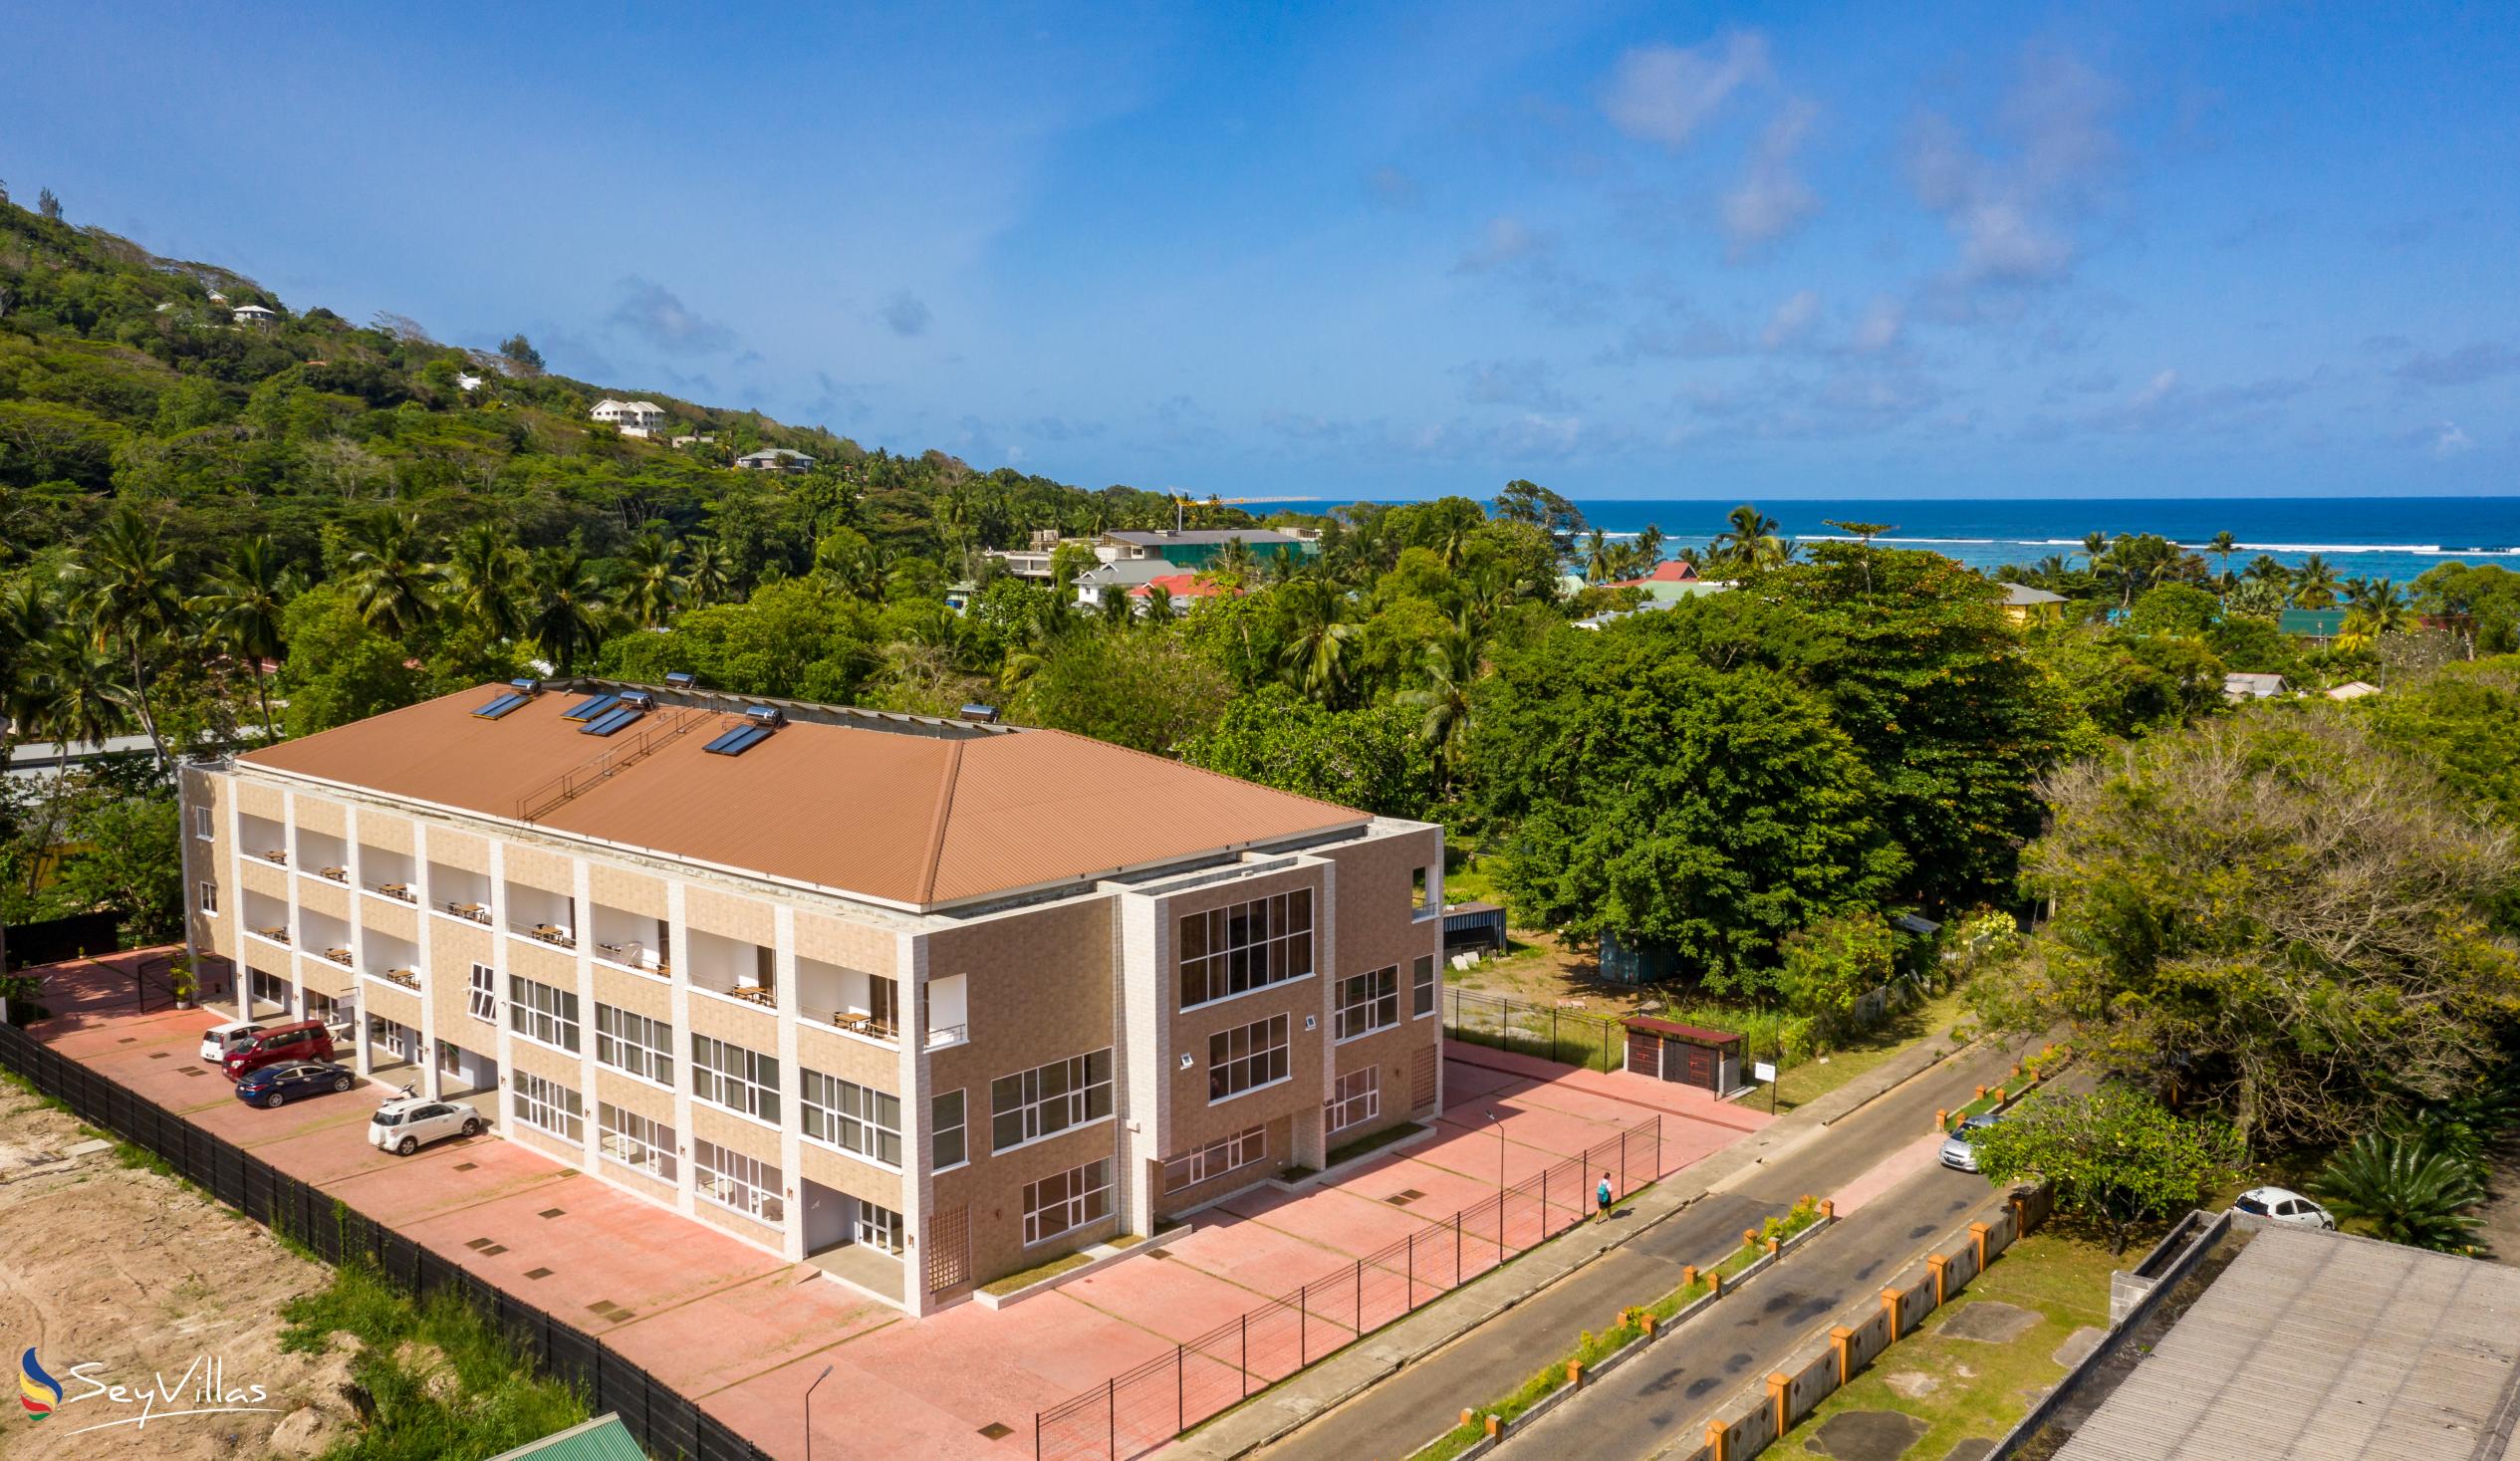 Foto 1: Royale Suites by Arc Royale Luxury Apartments - Extérieur - Mahé (Seychelles)